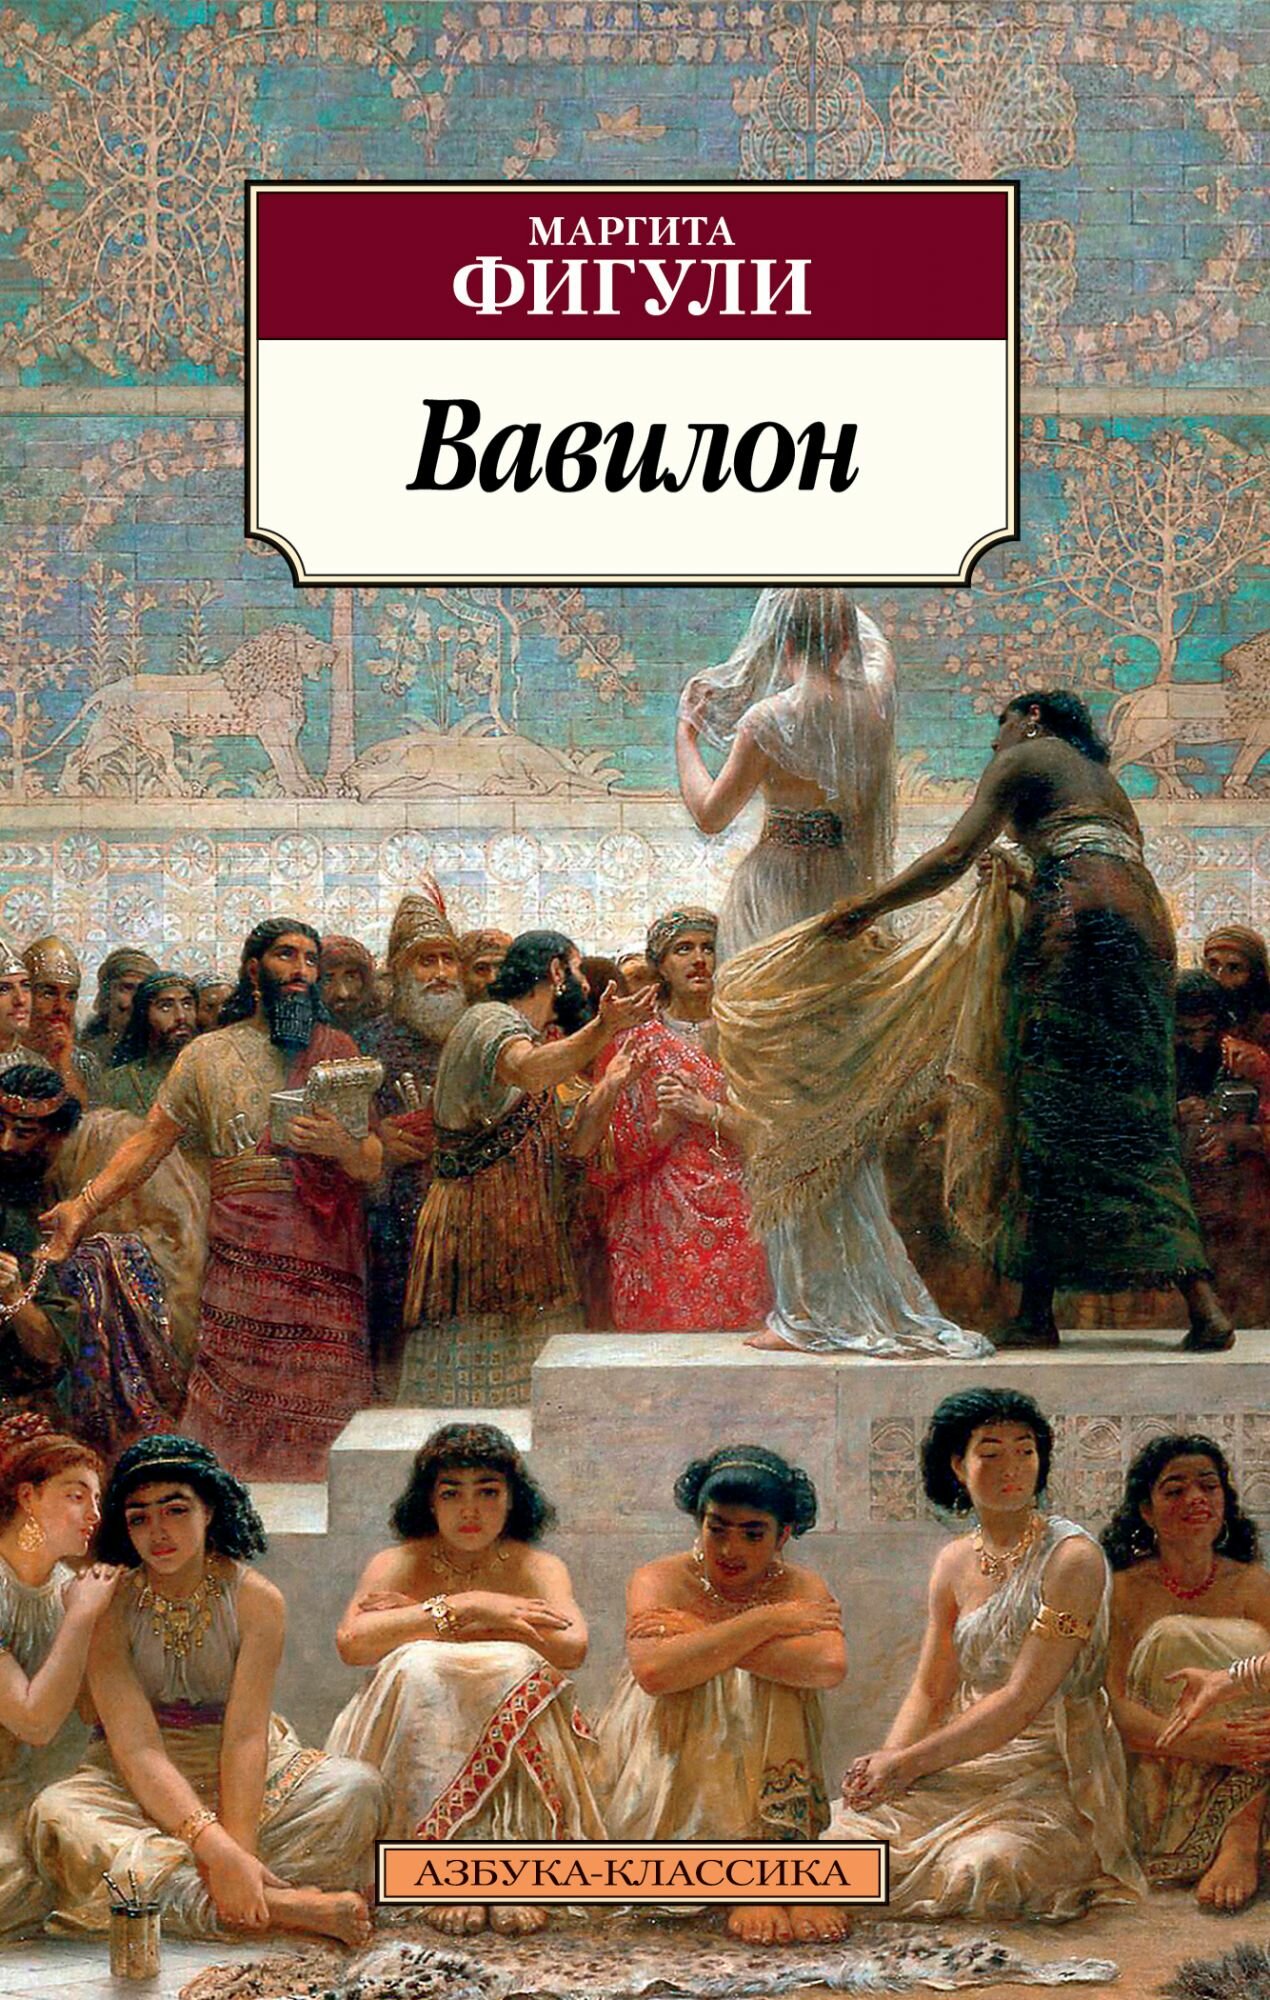 Вавилон (Фигули Маргита) - фото №1